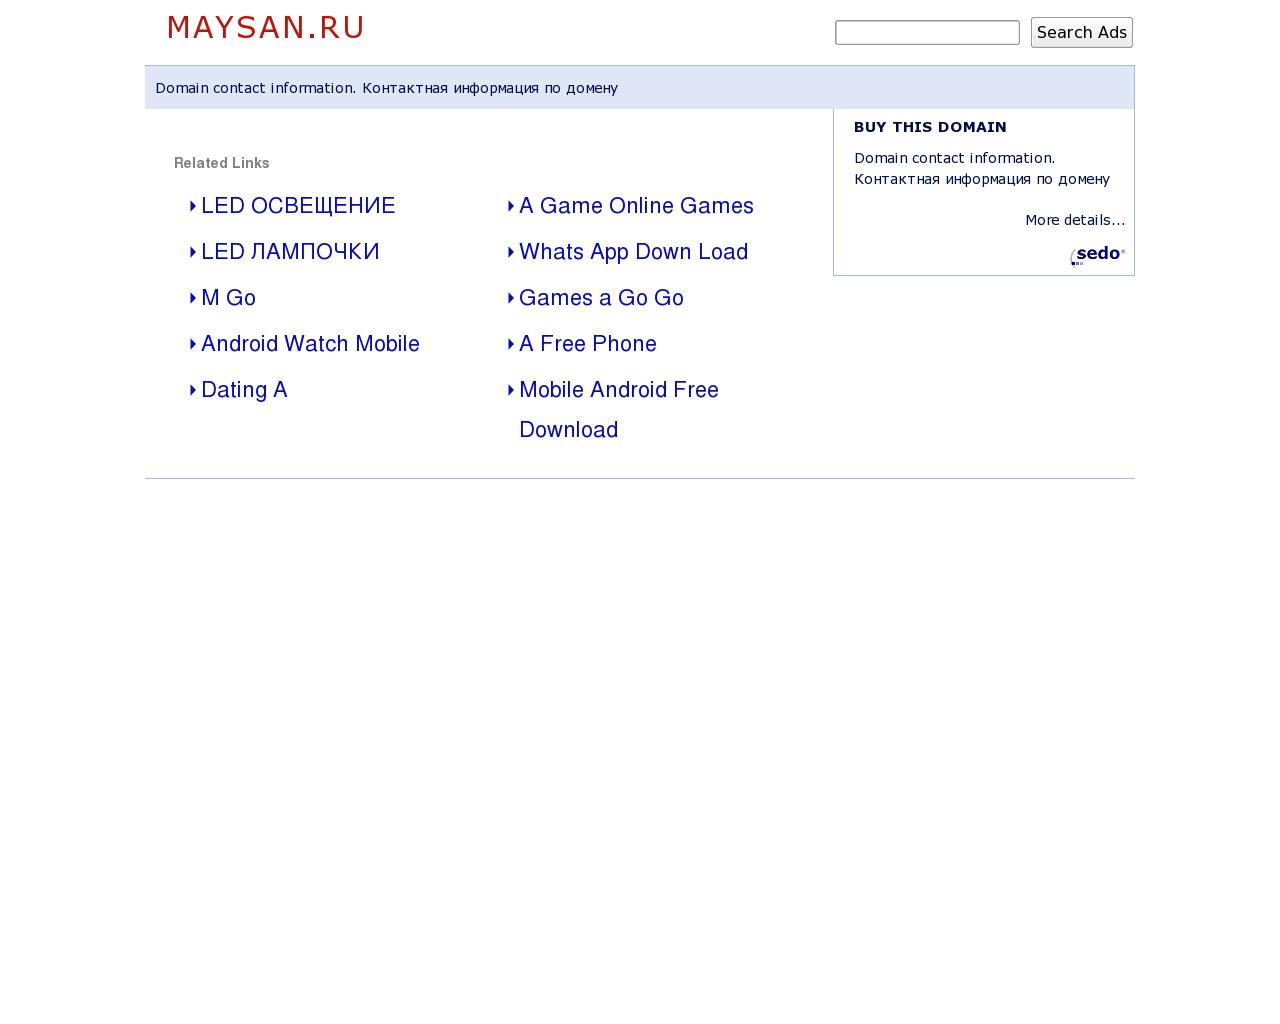 Изображение сайта maysan.ru в разрешении 1280x1024